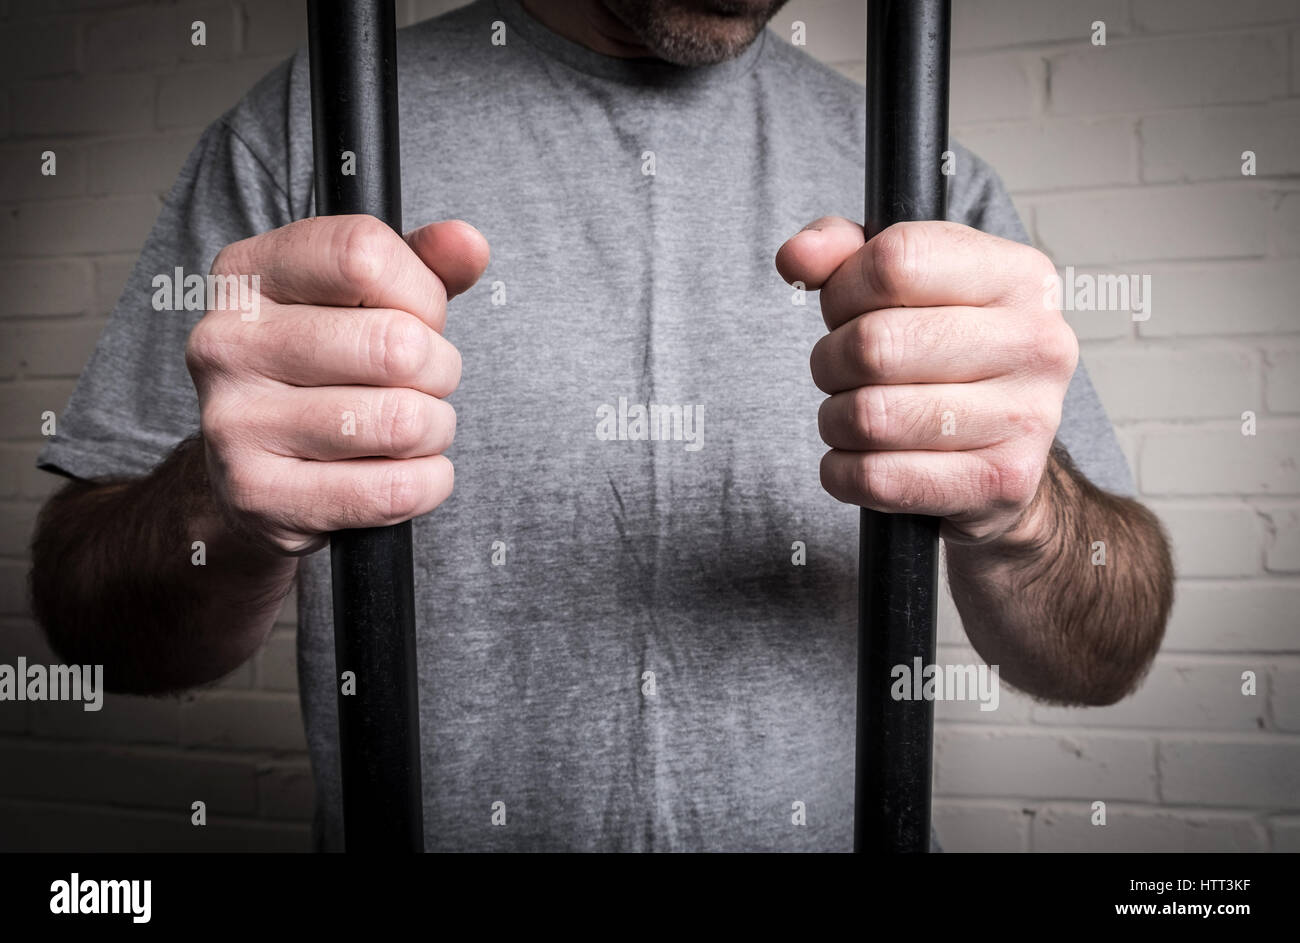 Un preso en su celda tras las rejas en la cárcel. Imagen planteados por modelo Foto de stock